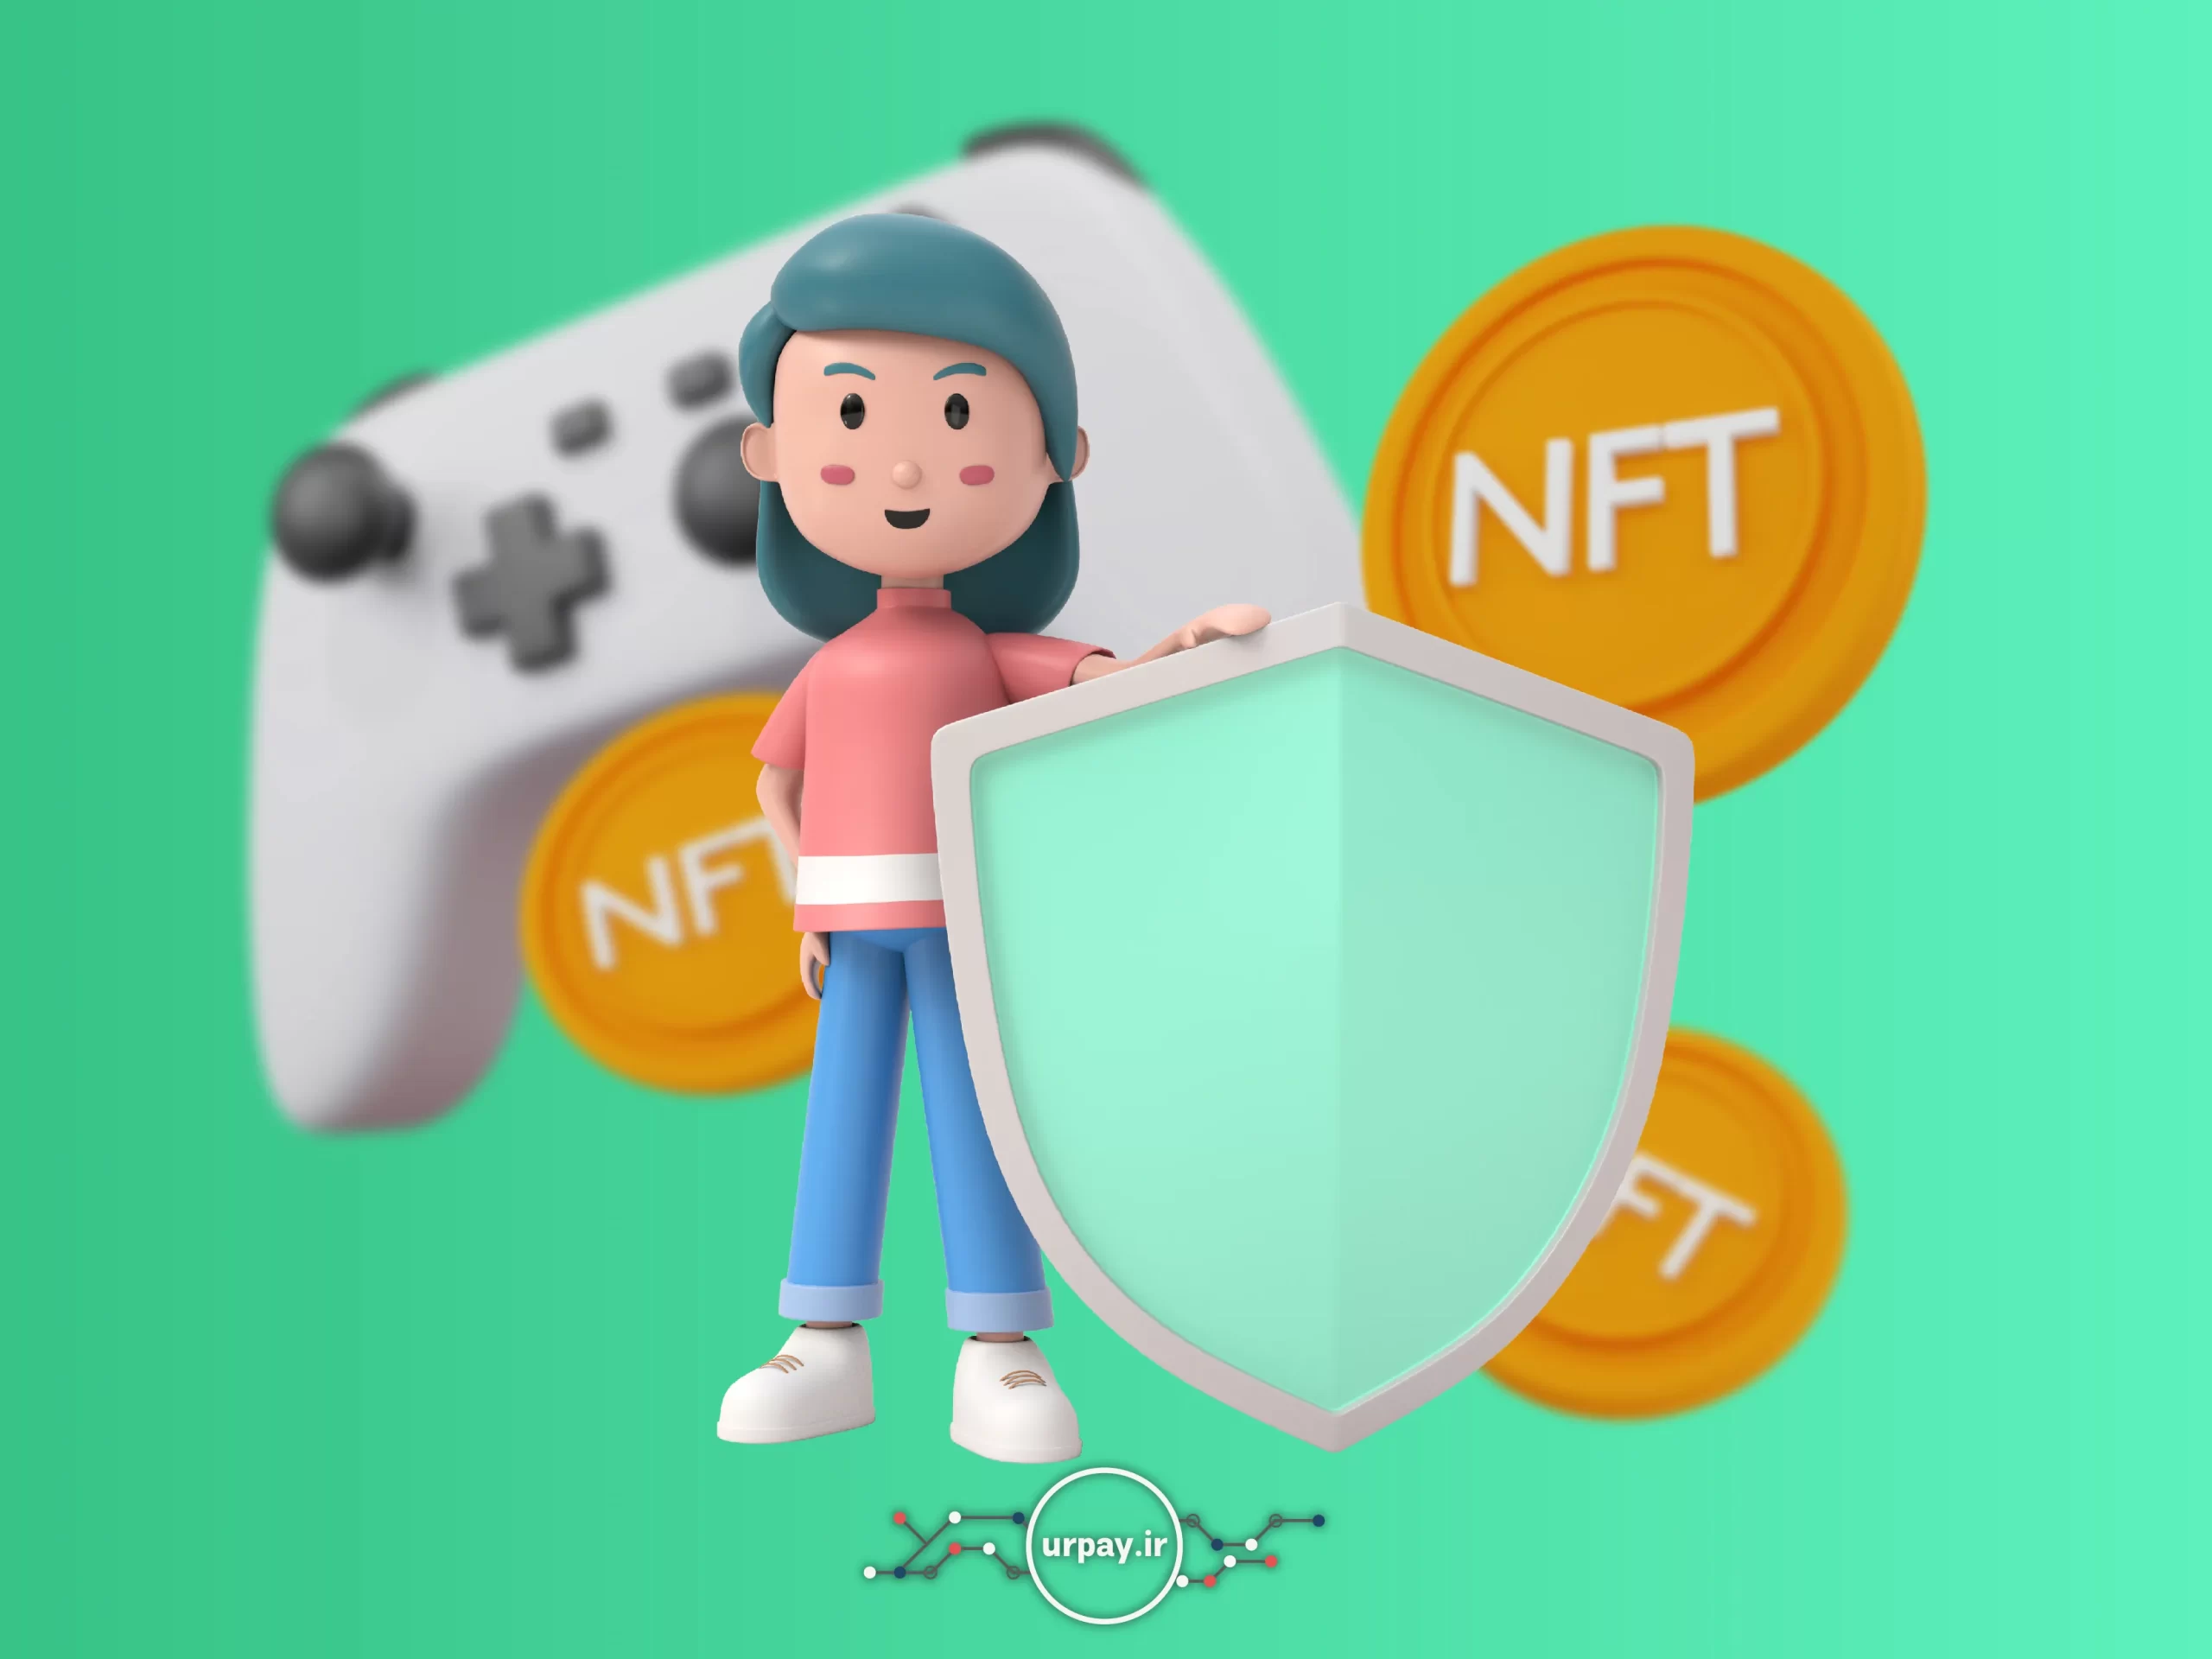 امنیت بالای بازی‌های NFT امکان کسب درآمد امنی را فراهم می‌کند.